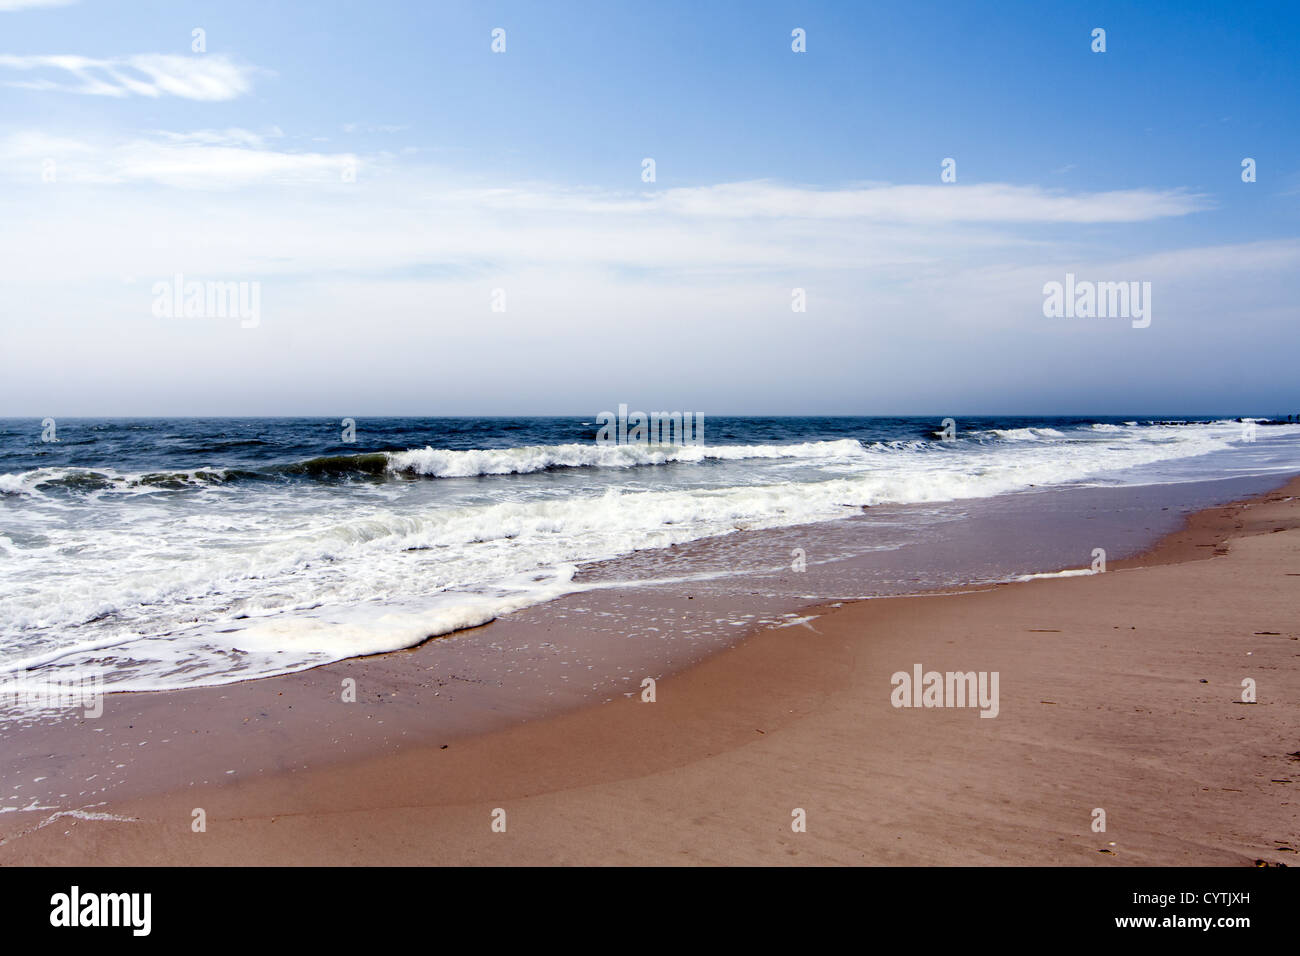 Belle plage avec mer océan vagues s'écraser sous un ciel bleu avec des nuages blancs, courants de retour. Banque D'Images